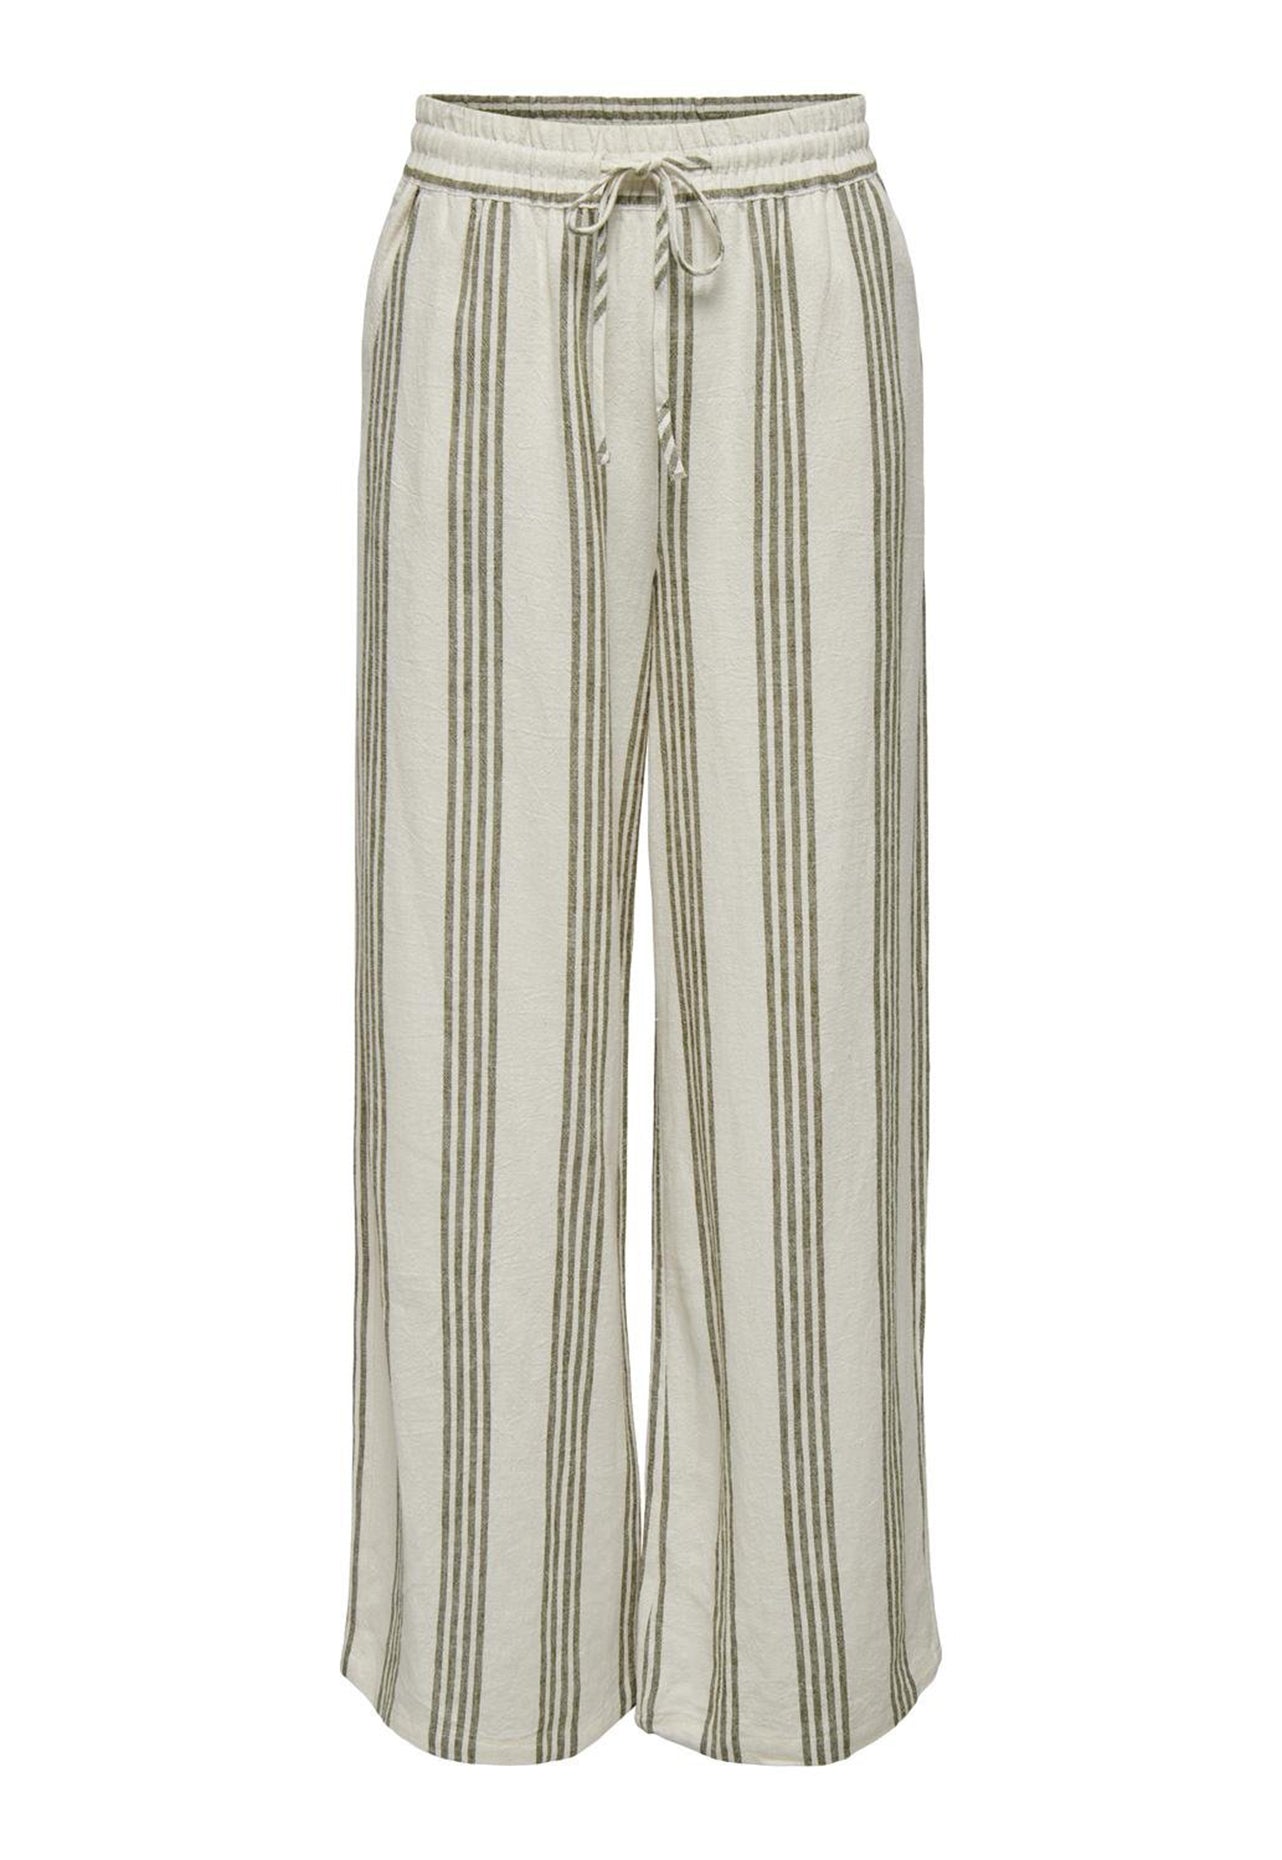 Pantalones de conjunto de lino a rayas con pernera ancha y cintura alta Say de JDY en beige y verde oliva - One Nation Clothing